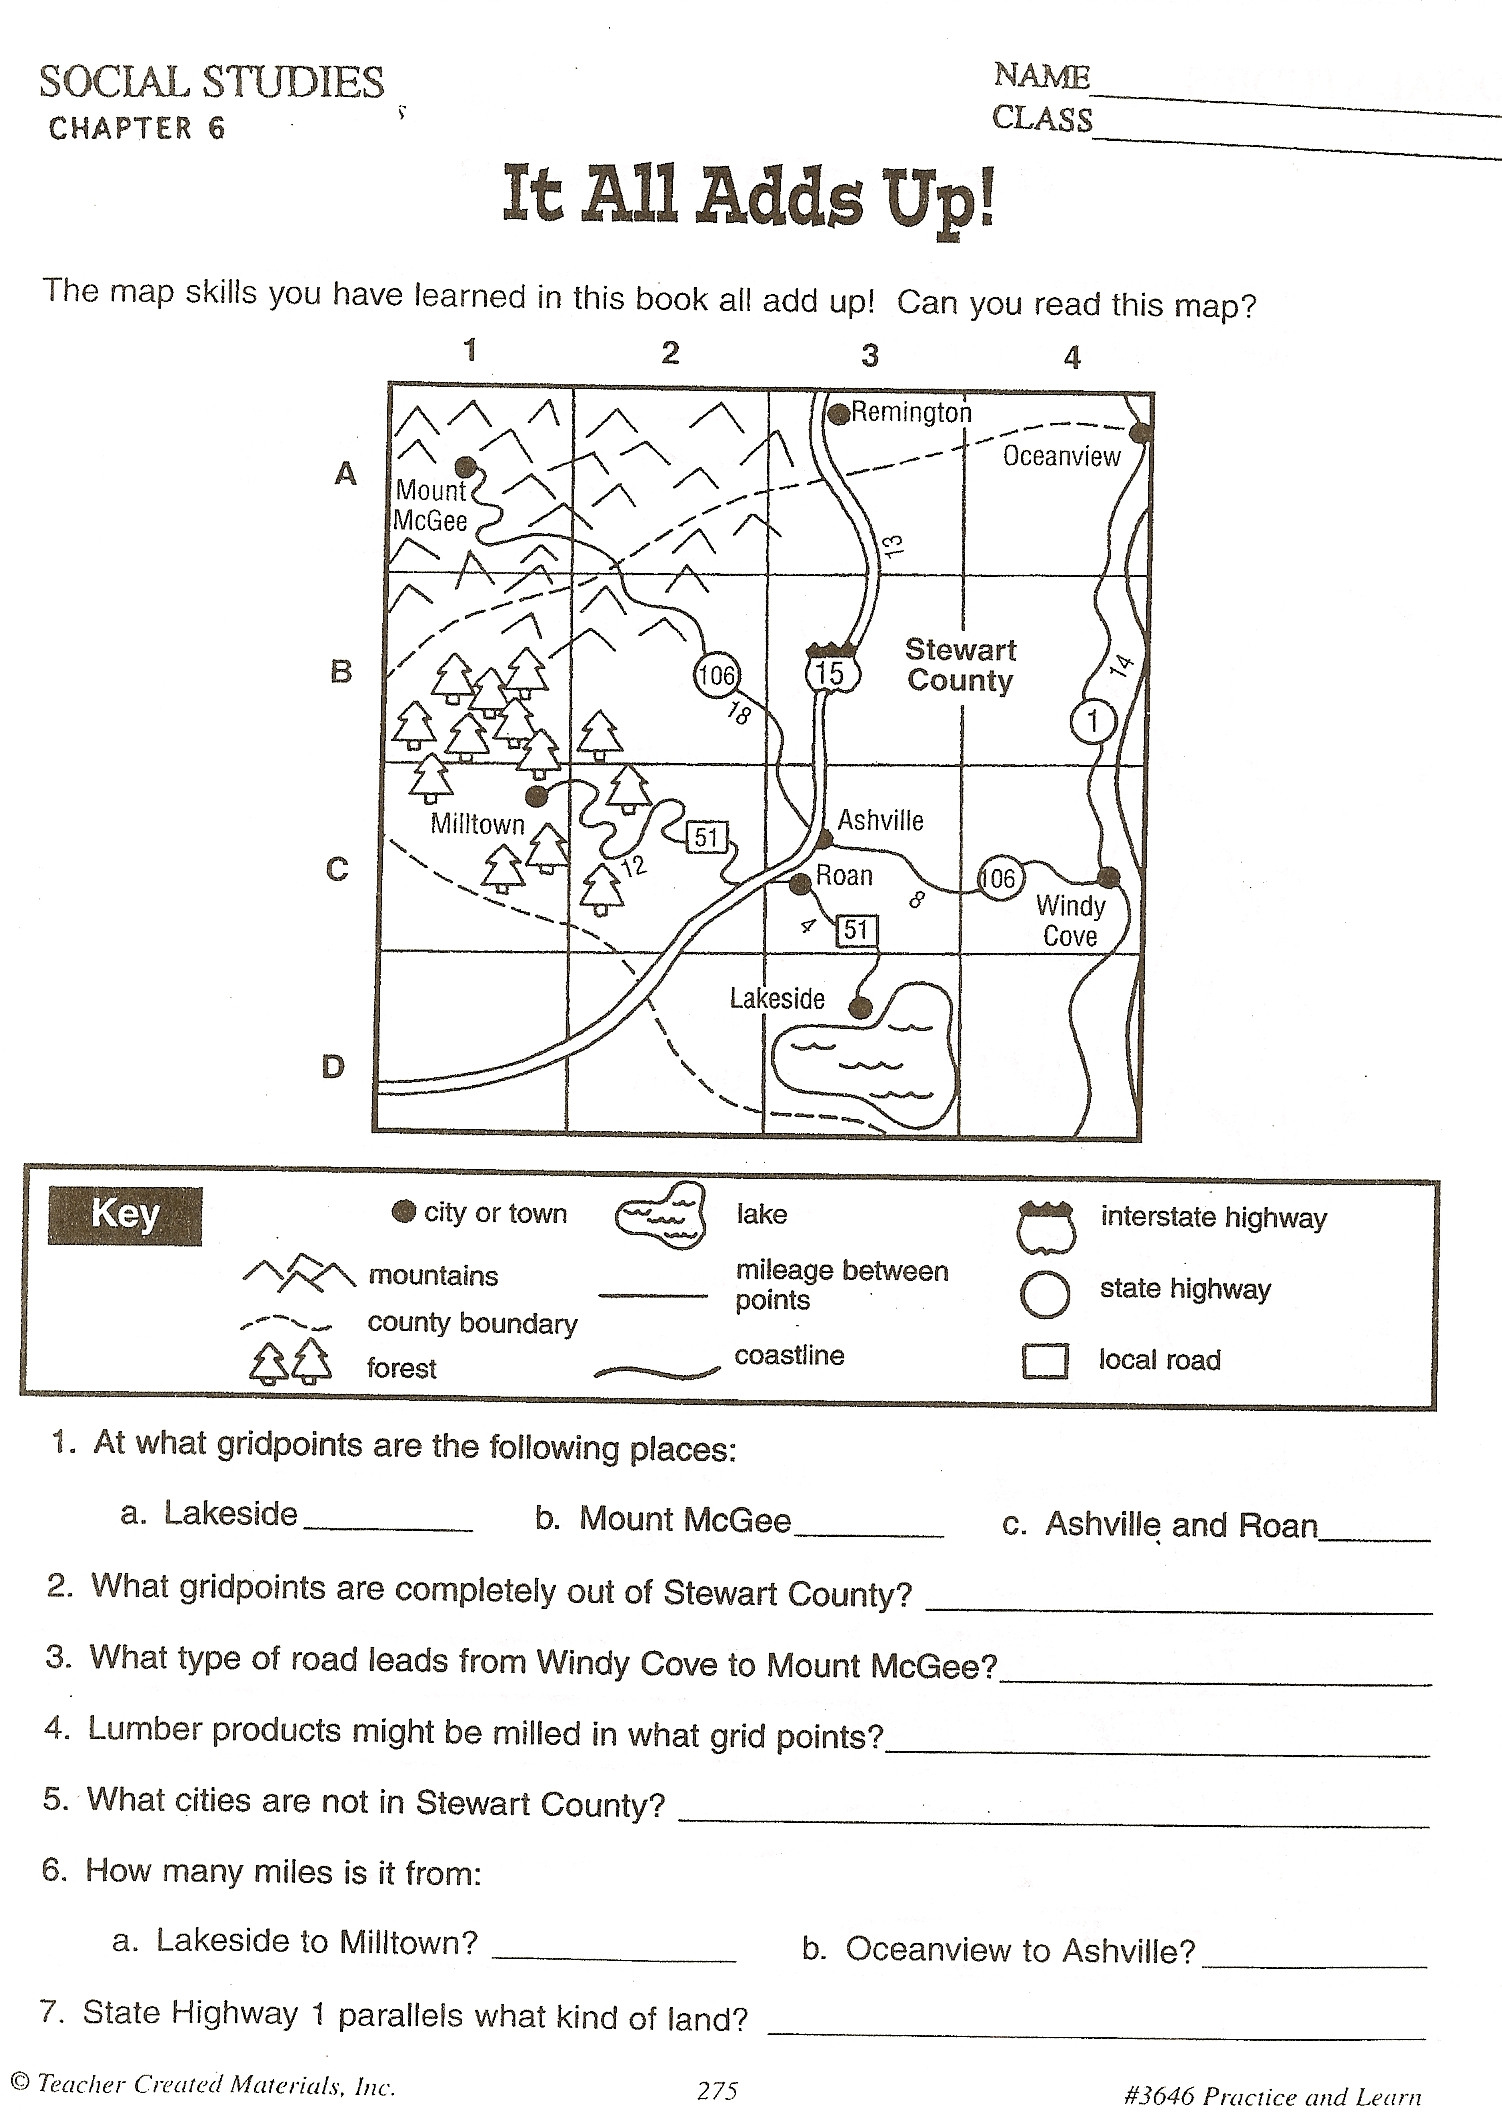 4Th Grade Social Studies Worksheets For Free Math Worksheet For Kids — db-excel.com